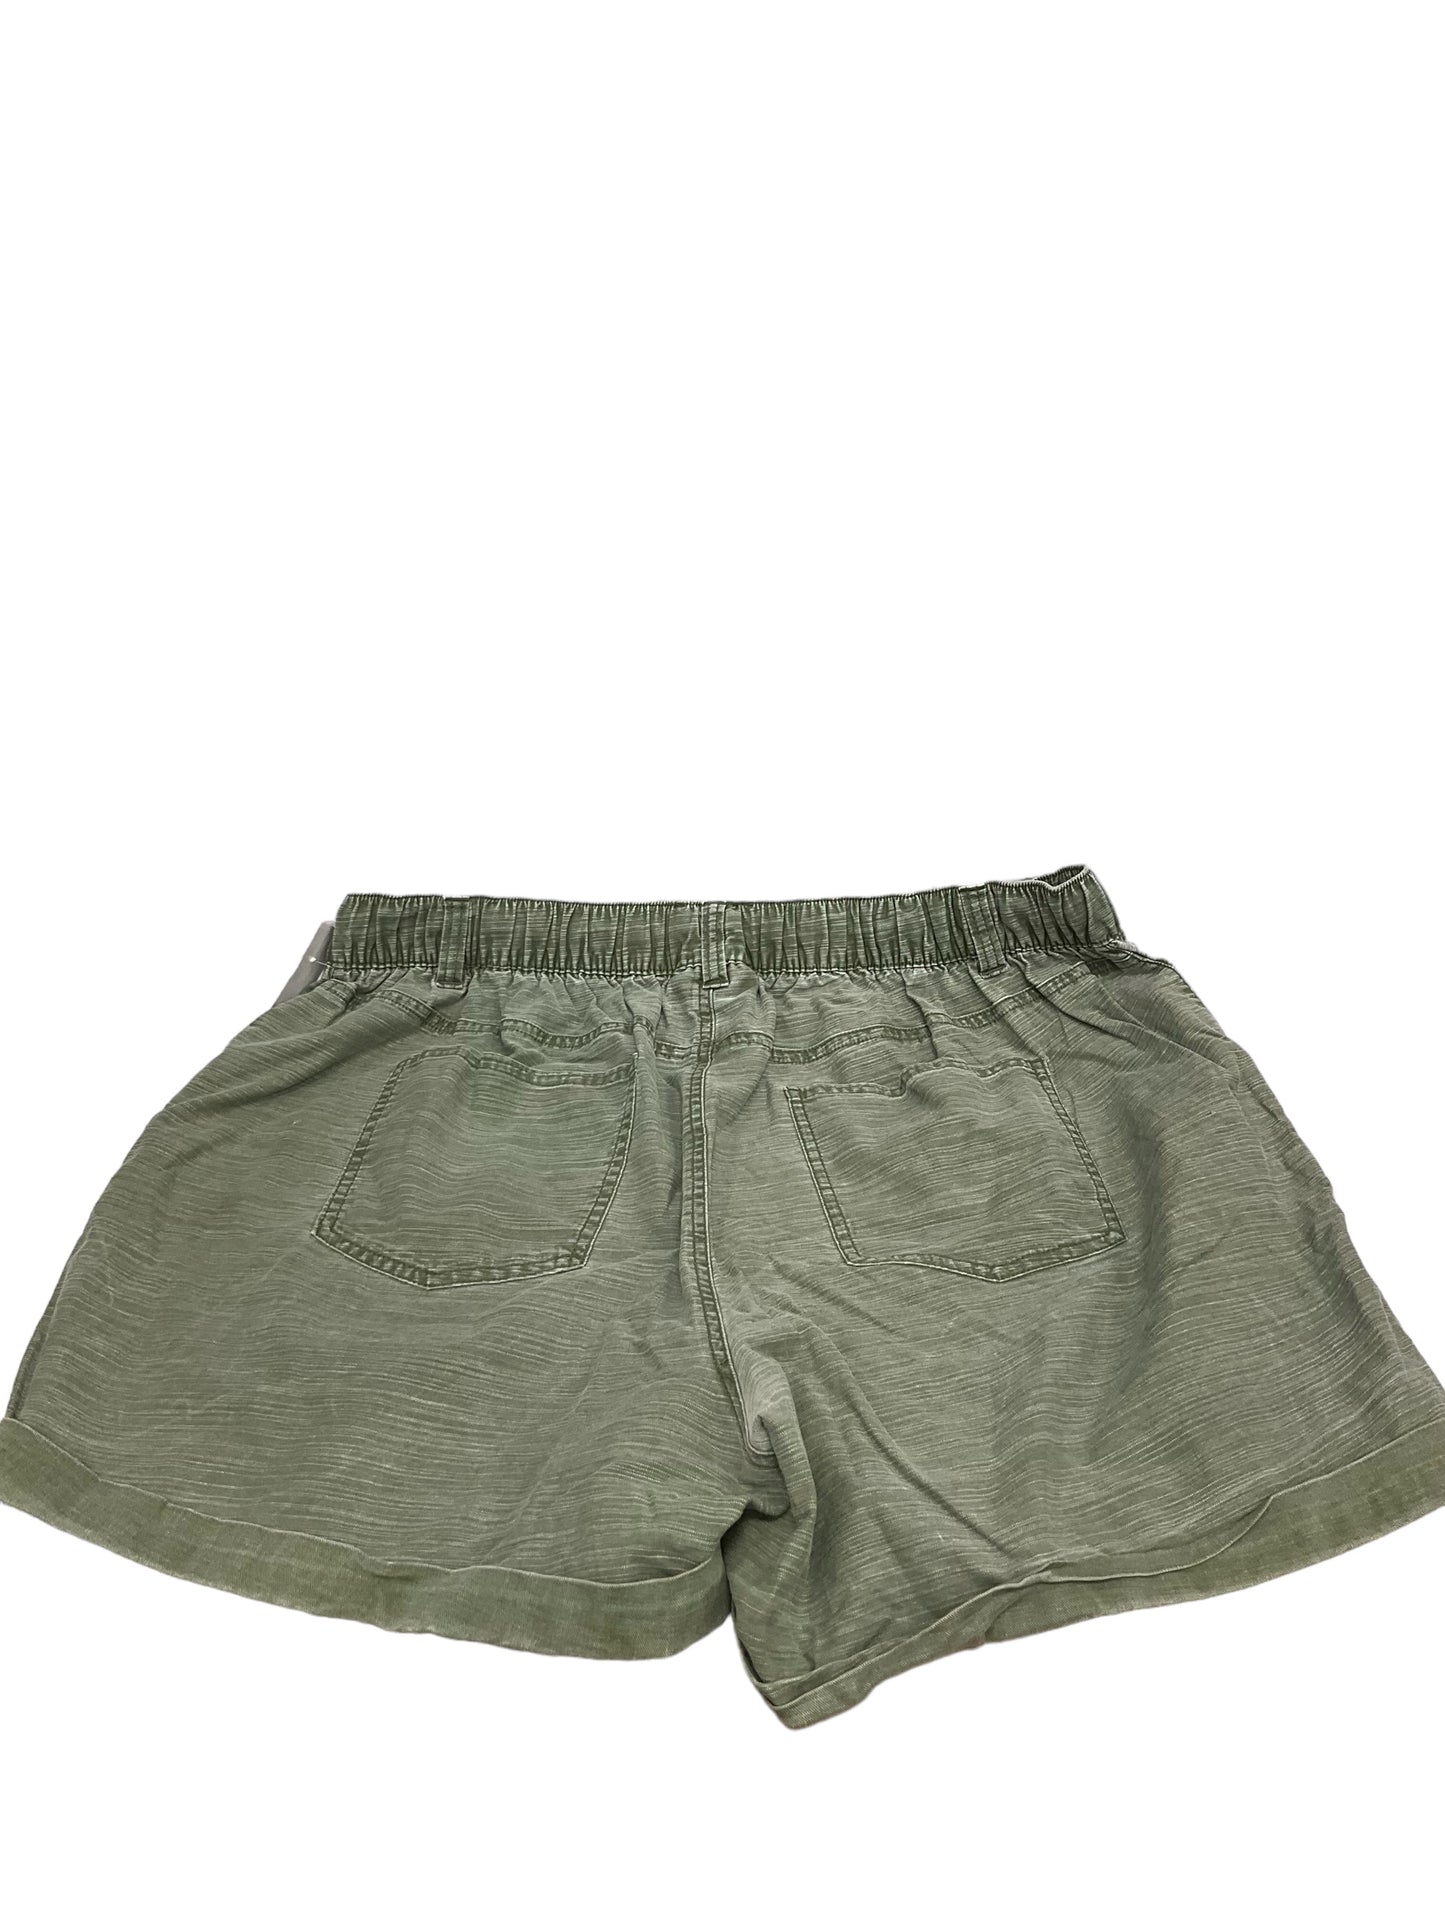 Shorts By Lane Bryant  Size: Xl